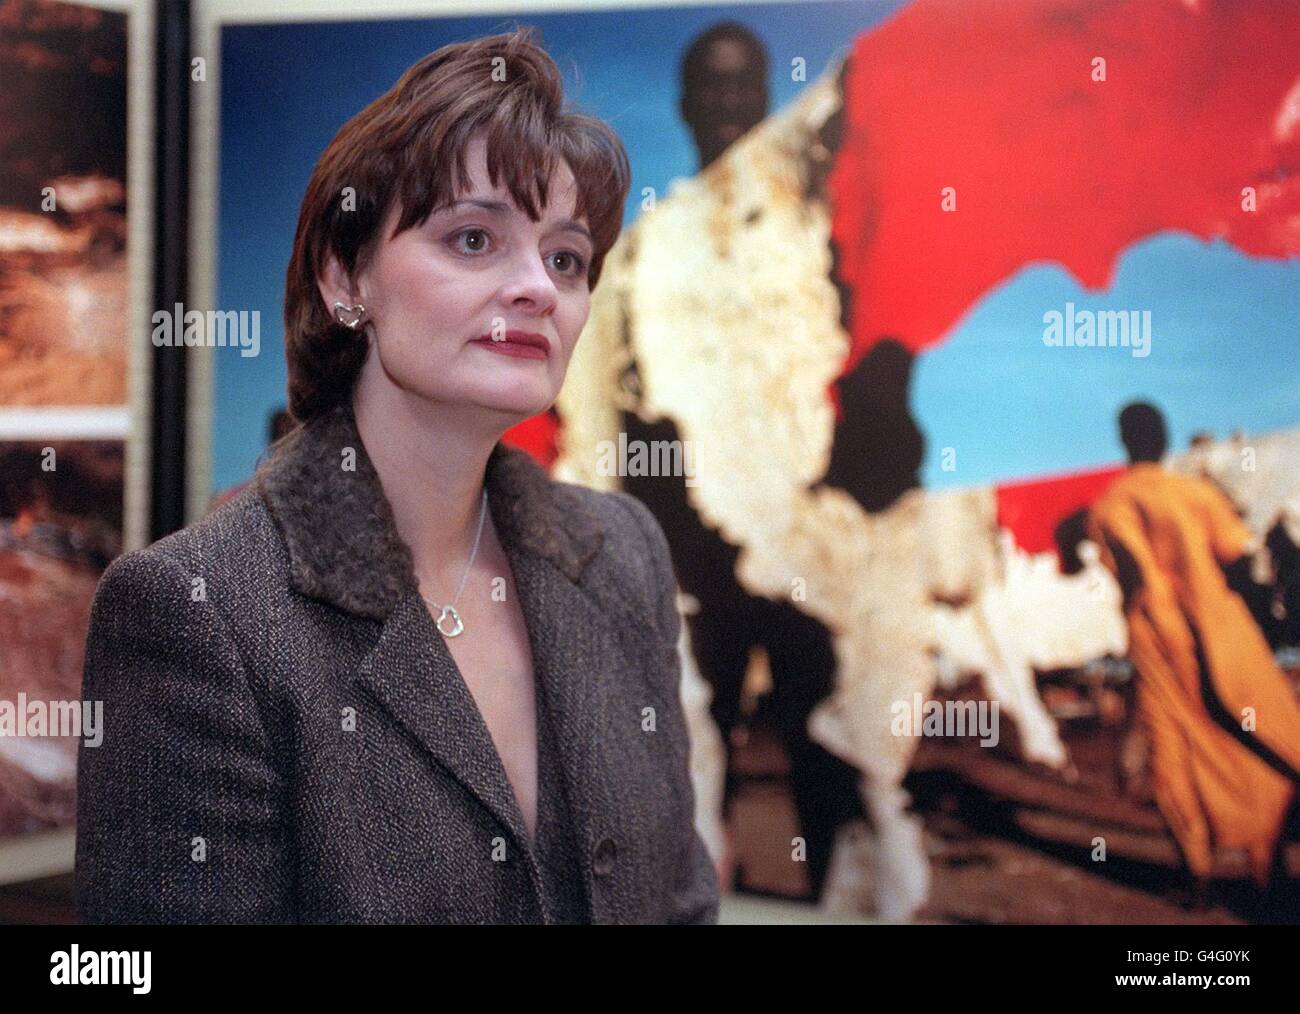 La moglie del primo ministro, Cherie Booth, QC, vede le immagini incluse nel World Press Photo Exhibition del 1998 mentre apre ufficialmente la "World Press Photo" al Royal Festival Hall sulla South Bank di Londra questa sera (mercoledì). Foto di Neil Munns/PA. Foto Stock